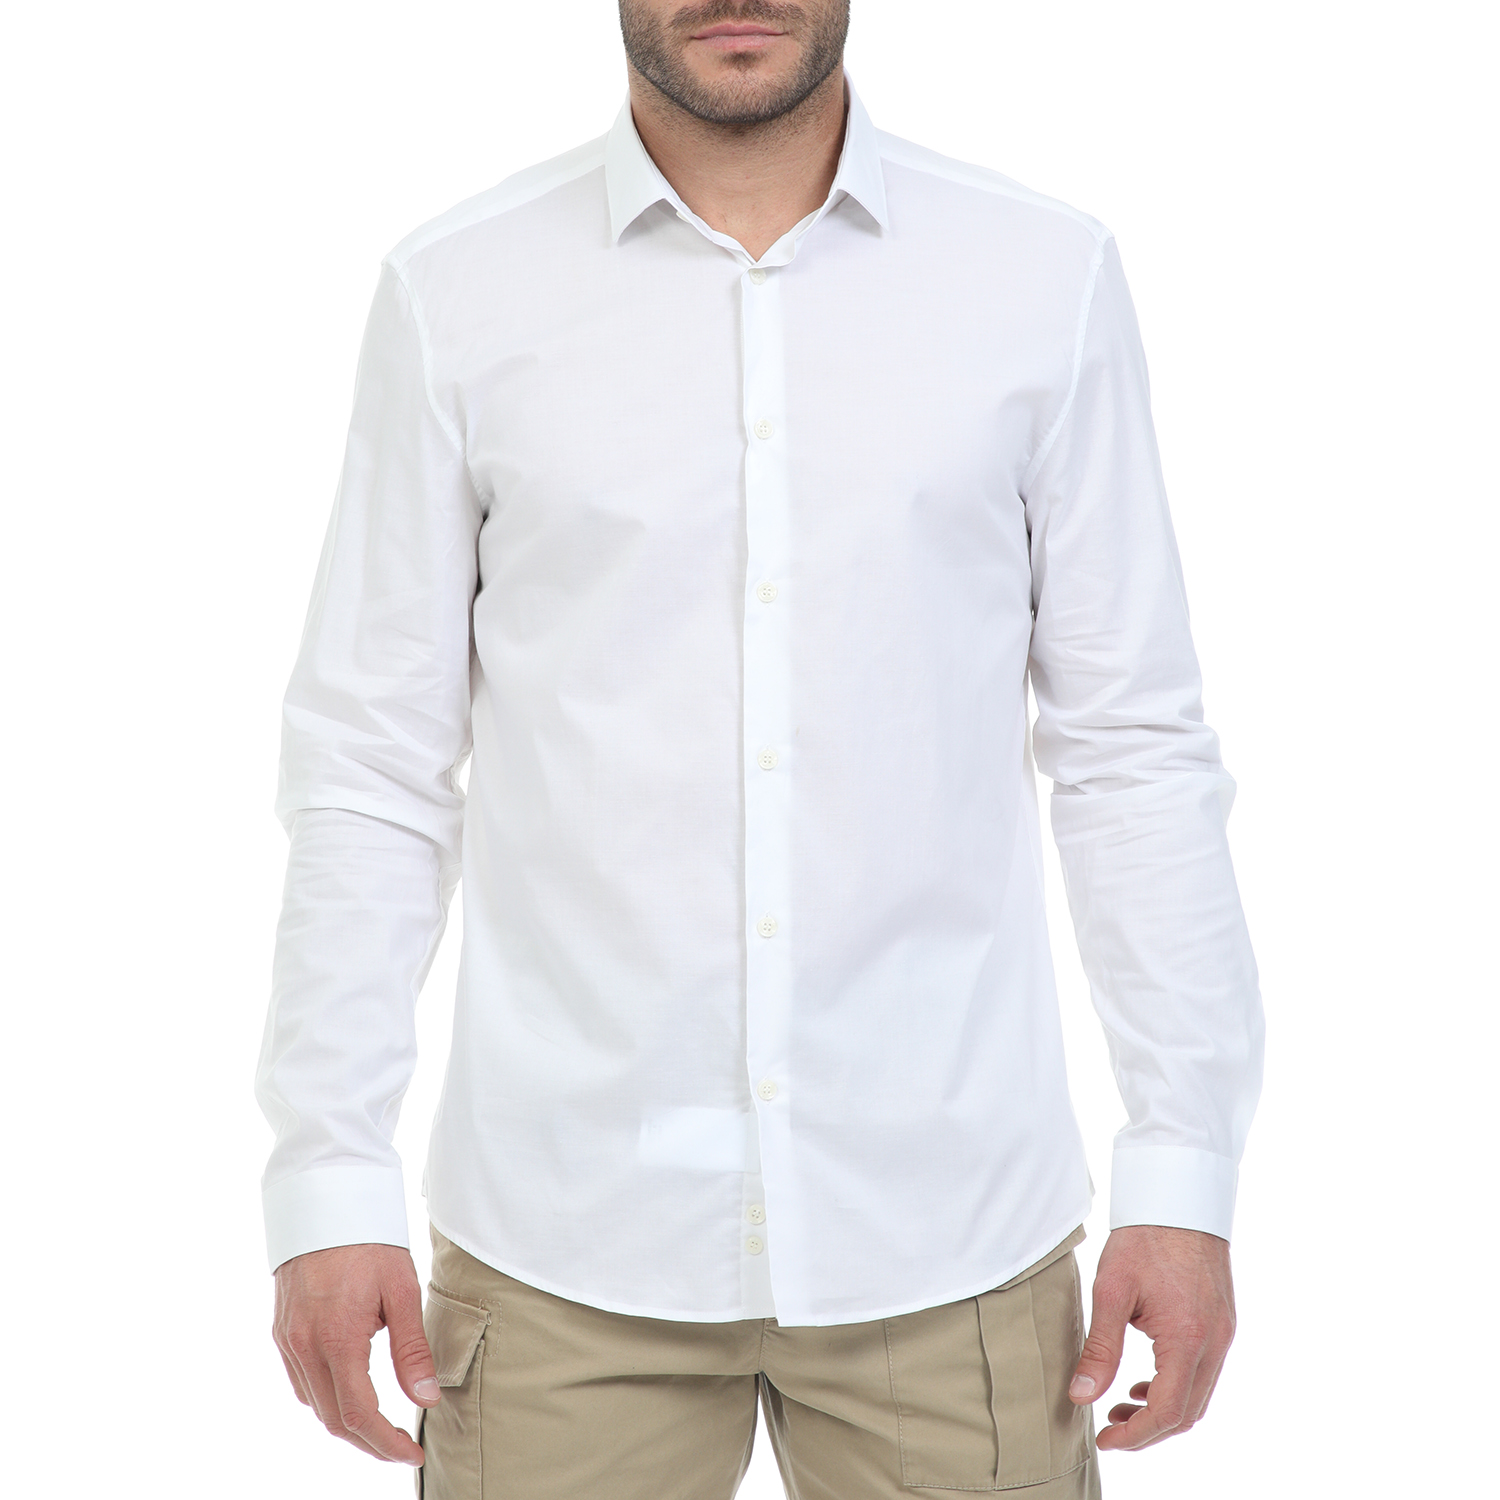 Ανδρικά/Ρούχα/Πουκάμισα/Μακρυμάνικα VERSACE - Ανδρικό πουκάμισο VERSACE λευκό